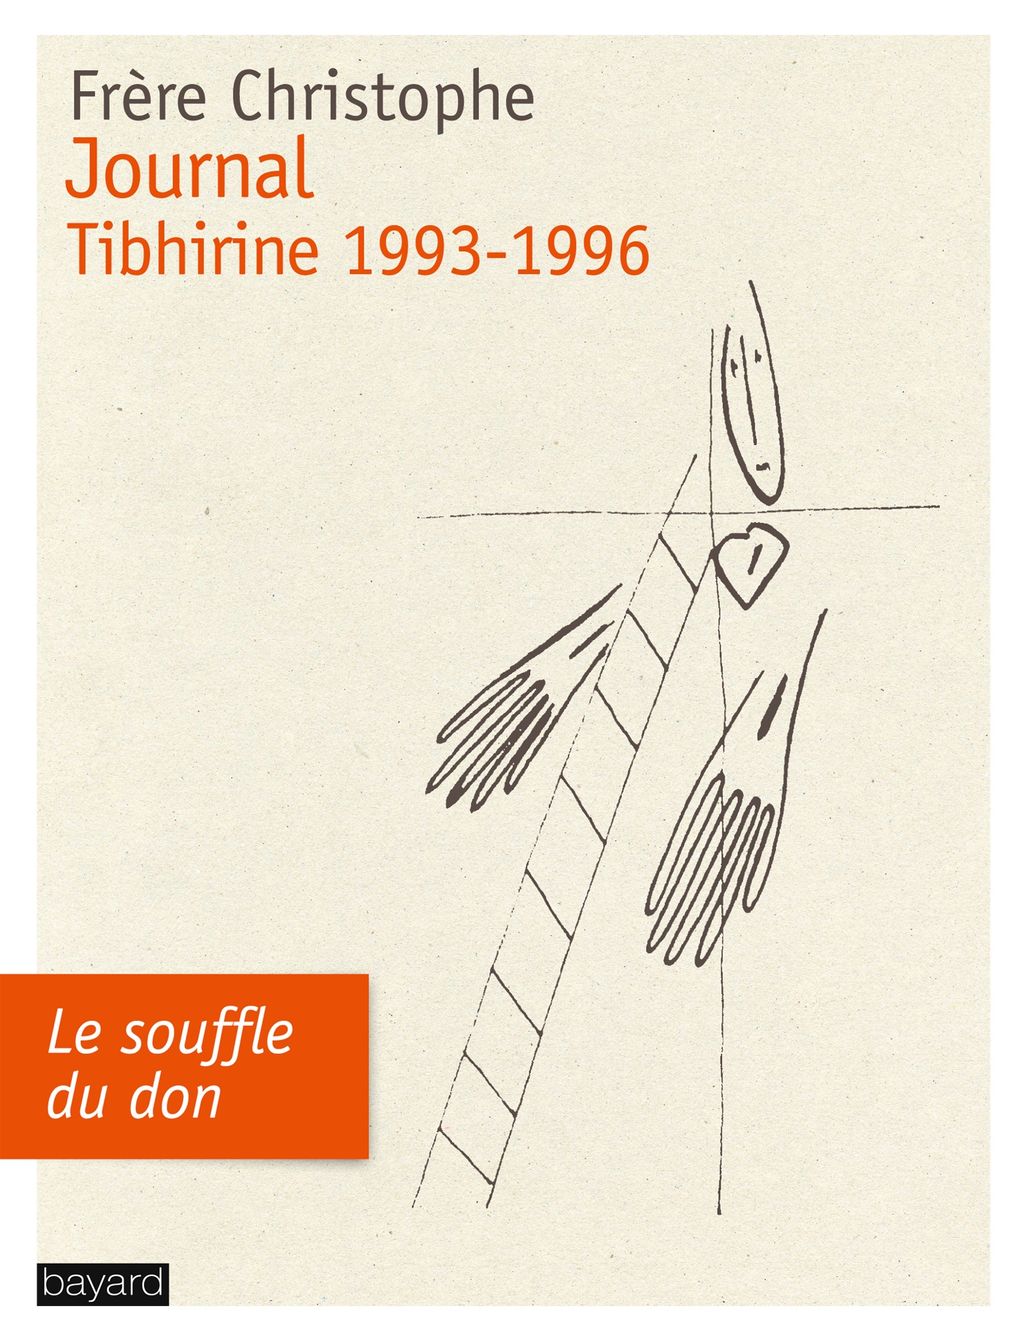 « JOURNAL, TIBHIRINE 1993-1996 » cover